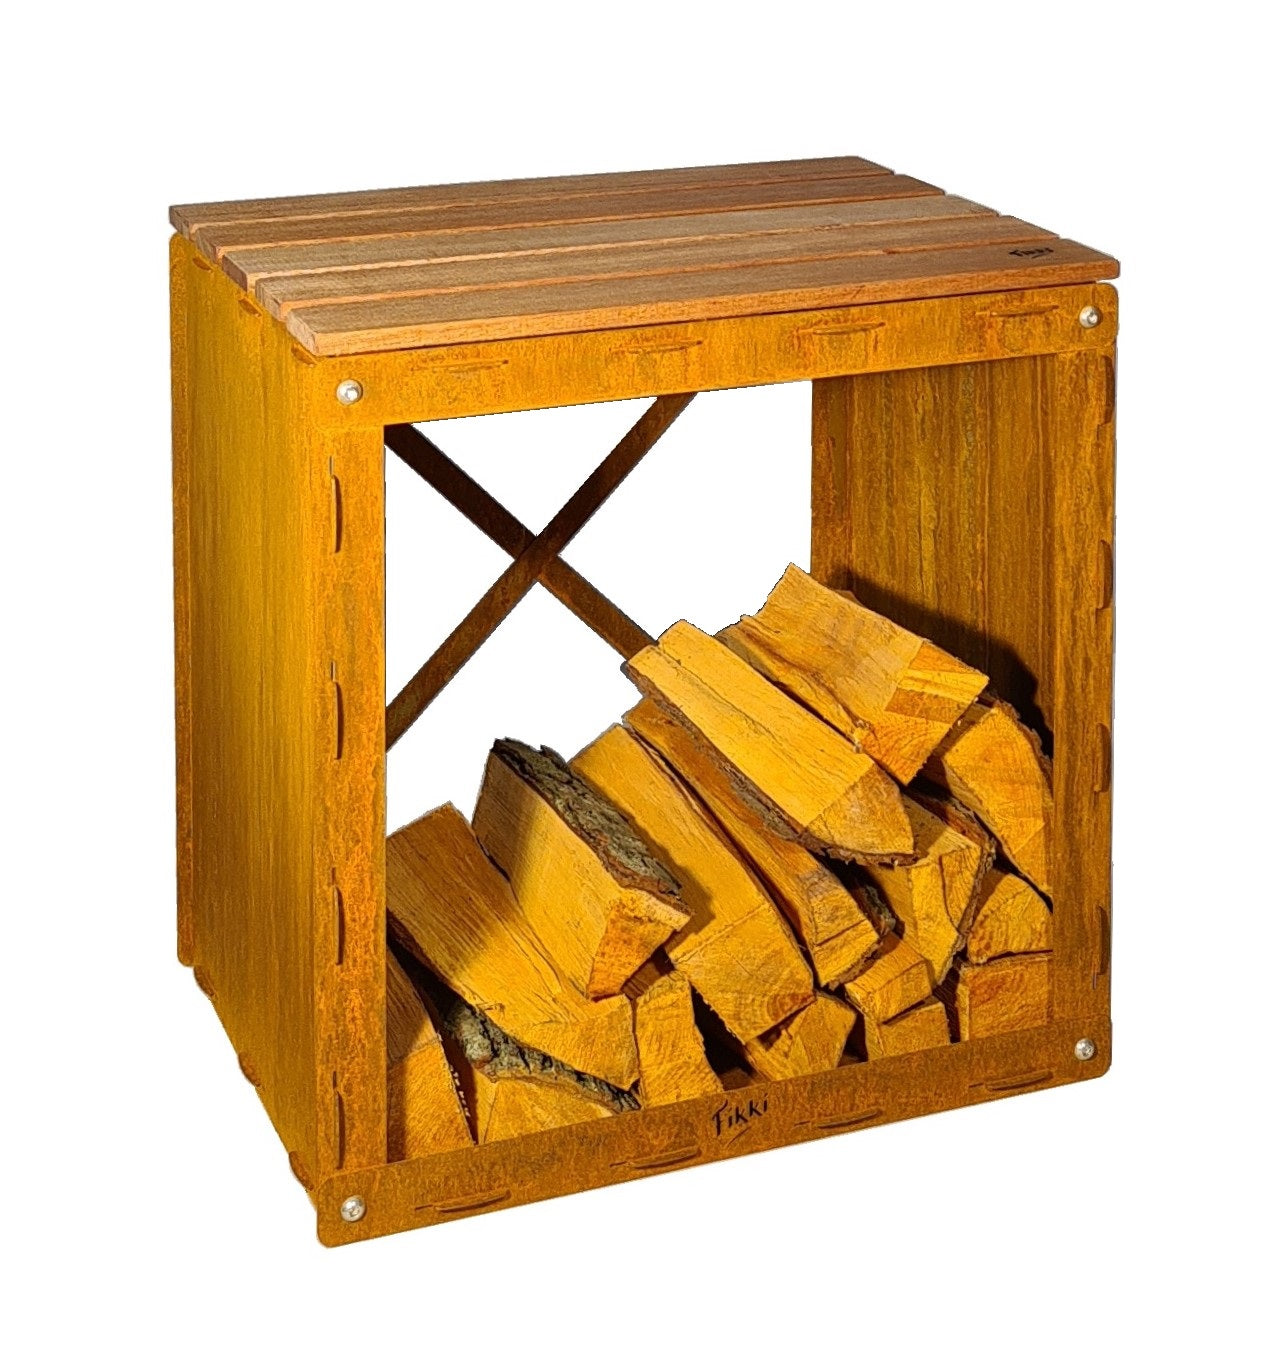 Fikki Wood Storage Hocker